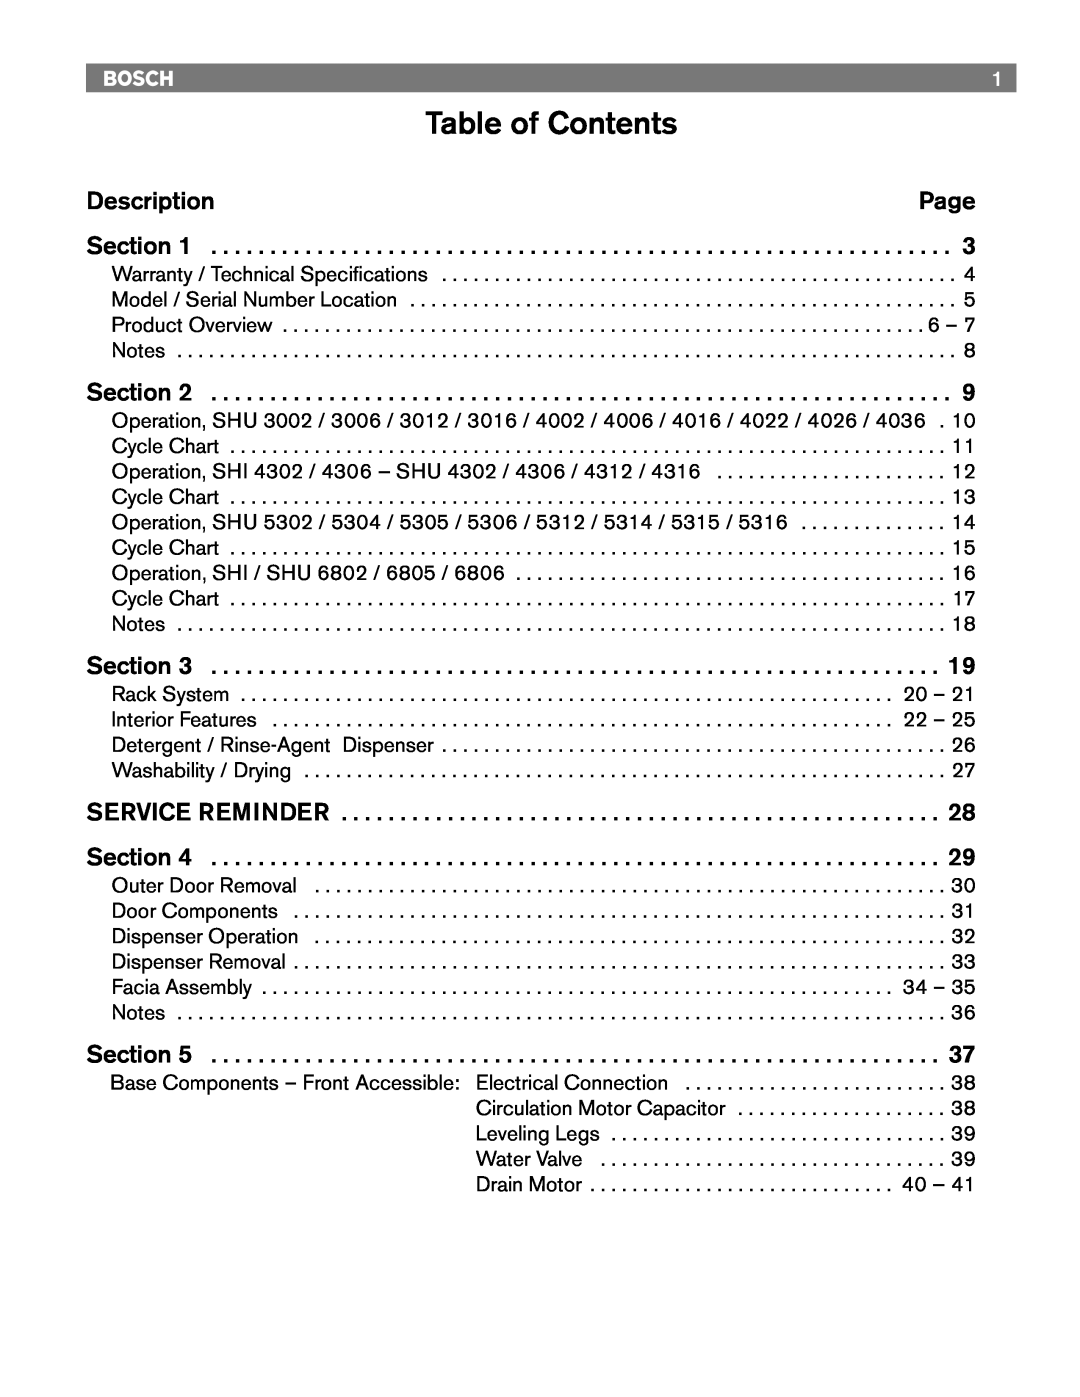 Bosch Appliances 4306, TRUE, 6806, 6805, 4302, 6802 manual Table of Contents, Description, Page, Section 